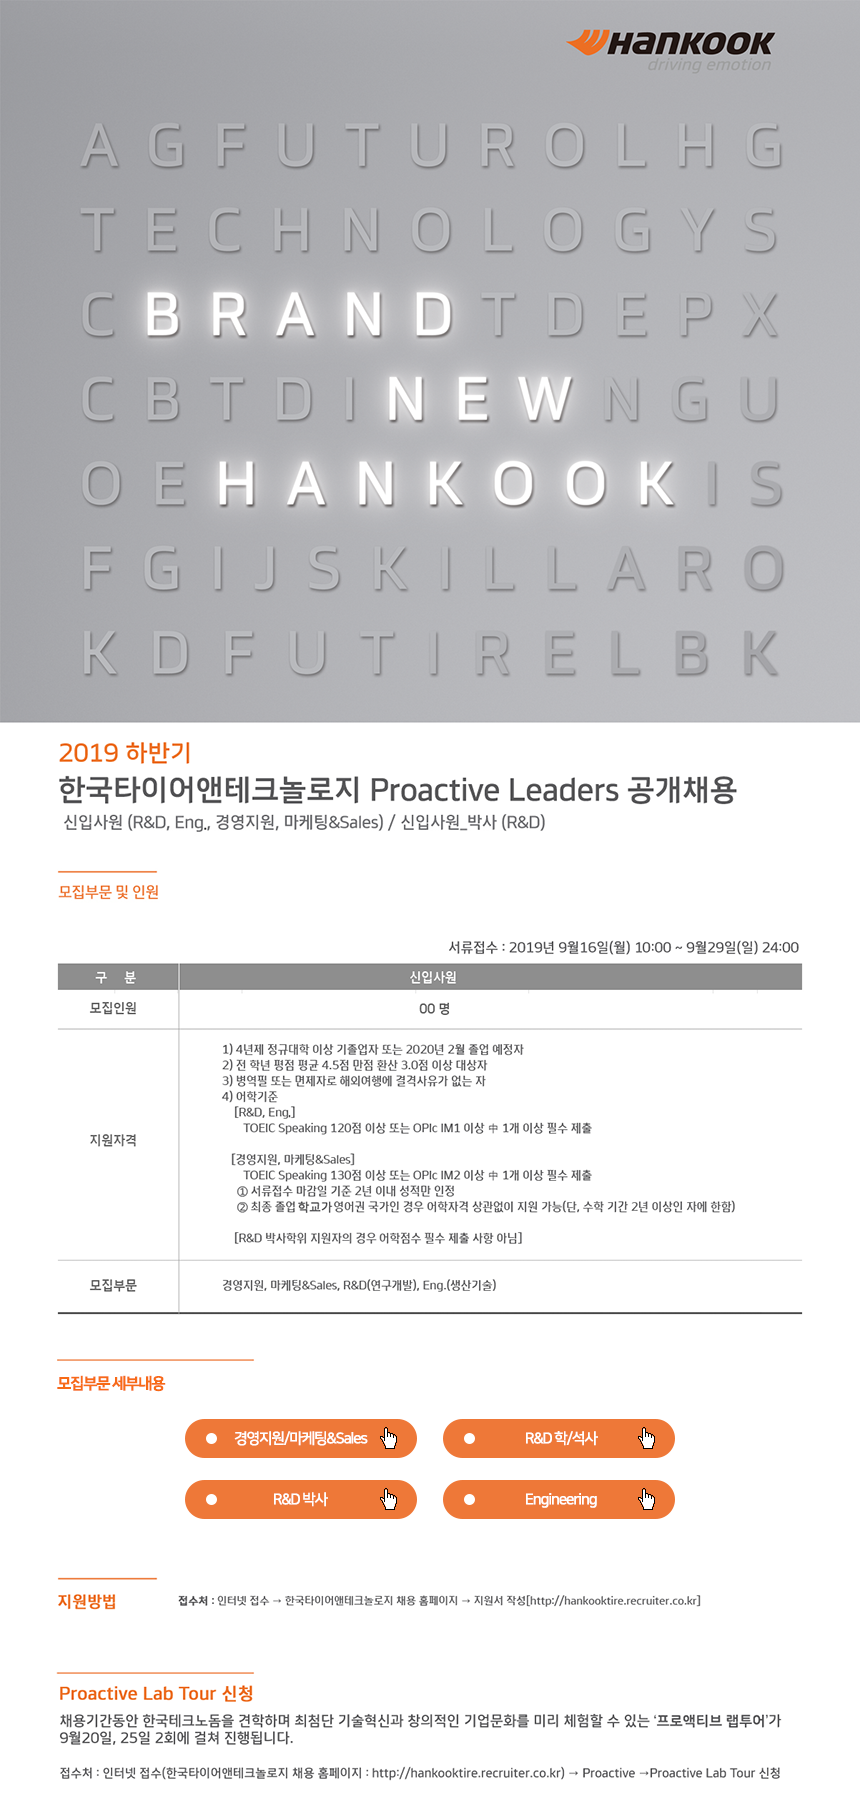 2019년 하반기 한국타이어 Proactive Leader 공개채용